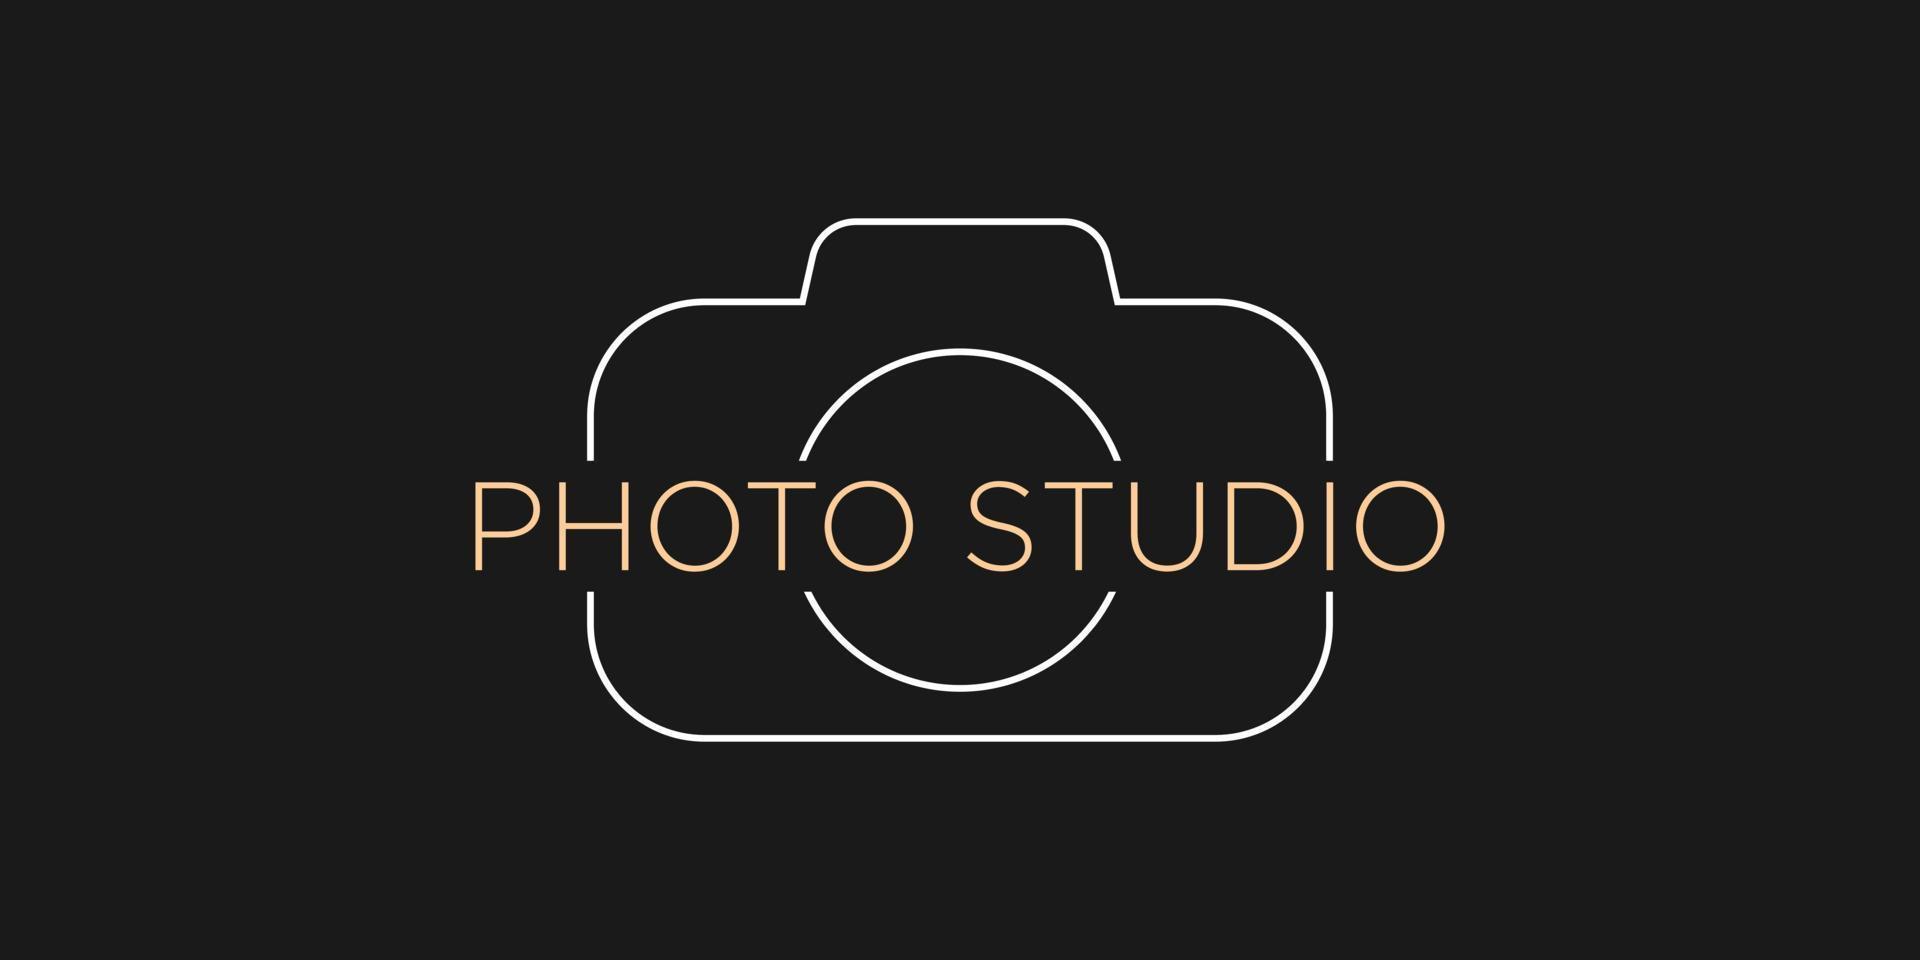 fotografía estudio logo plantilla, fotógrafo, foto. compañía, marca, marca, corporativo, identidad vector